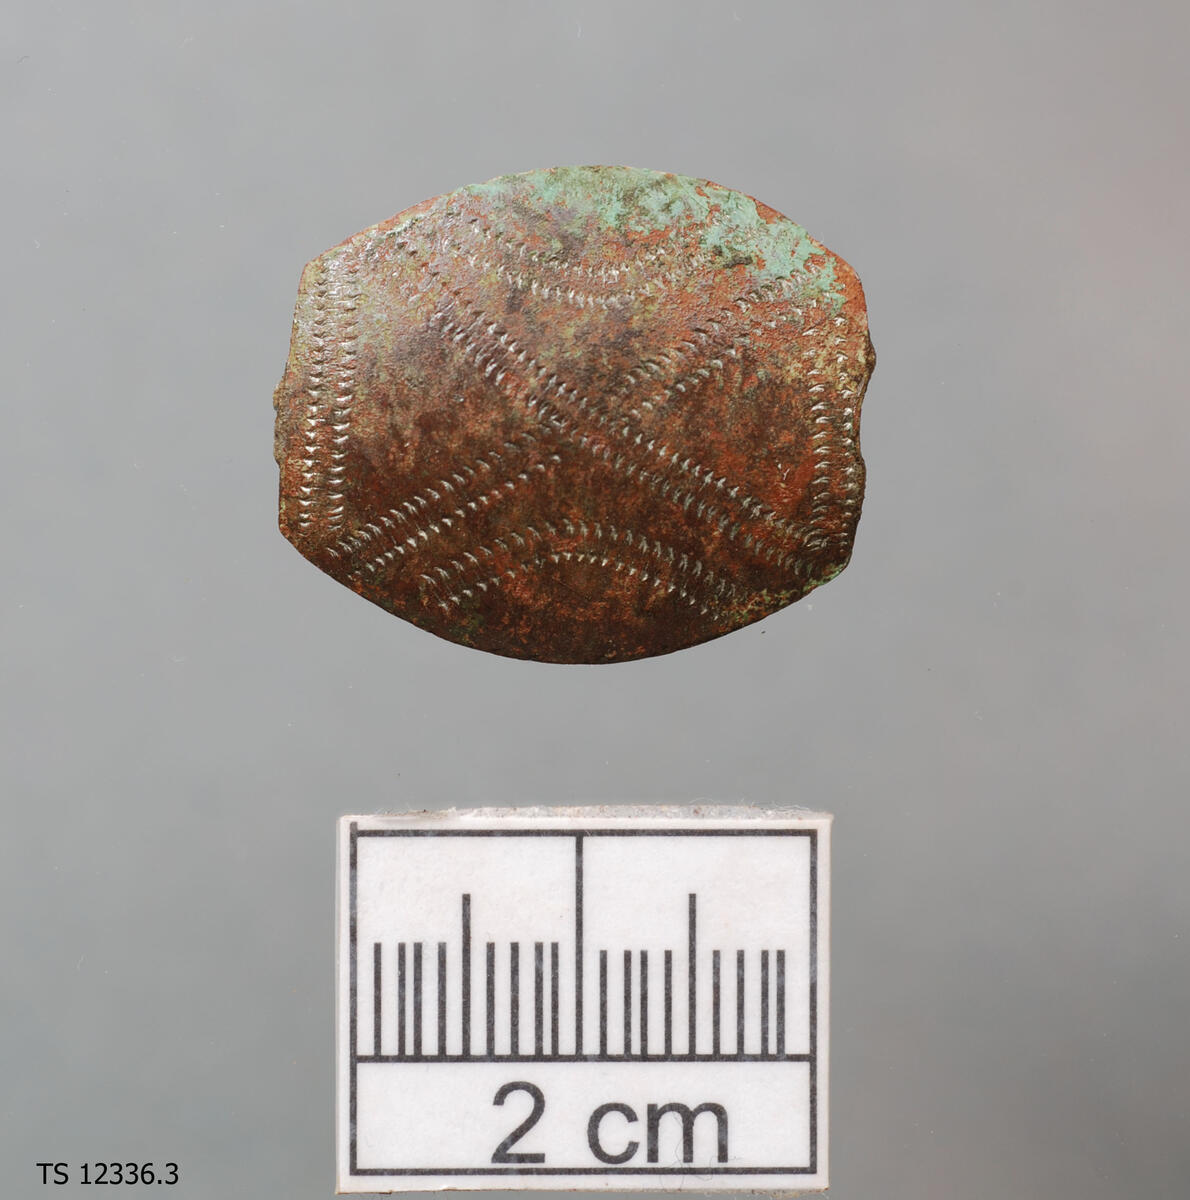 En (1) smykkedel. Samisk. Bladformet og ornert, litt mindre enn TS12336.2. 2,6 cm lang. 2,17 cm bred på midten, og 1,17 cm ved ytterkantene.
LokalitetsID: 263076